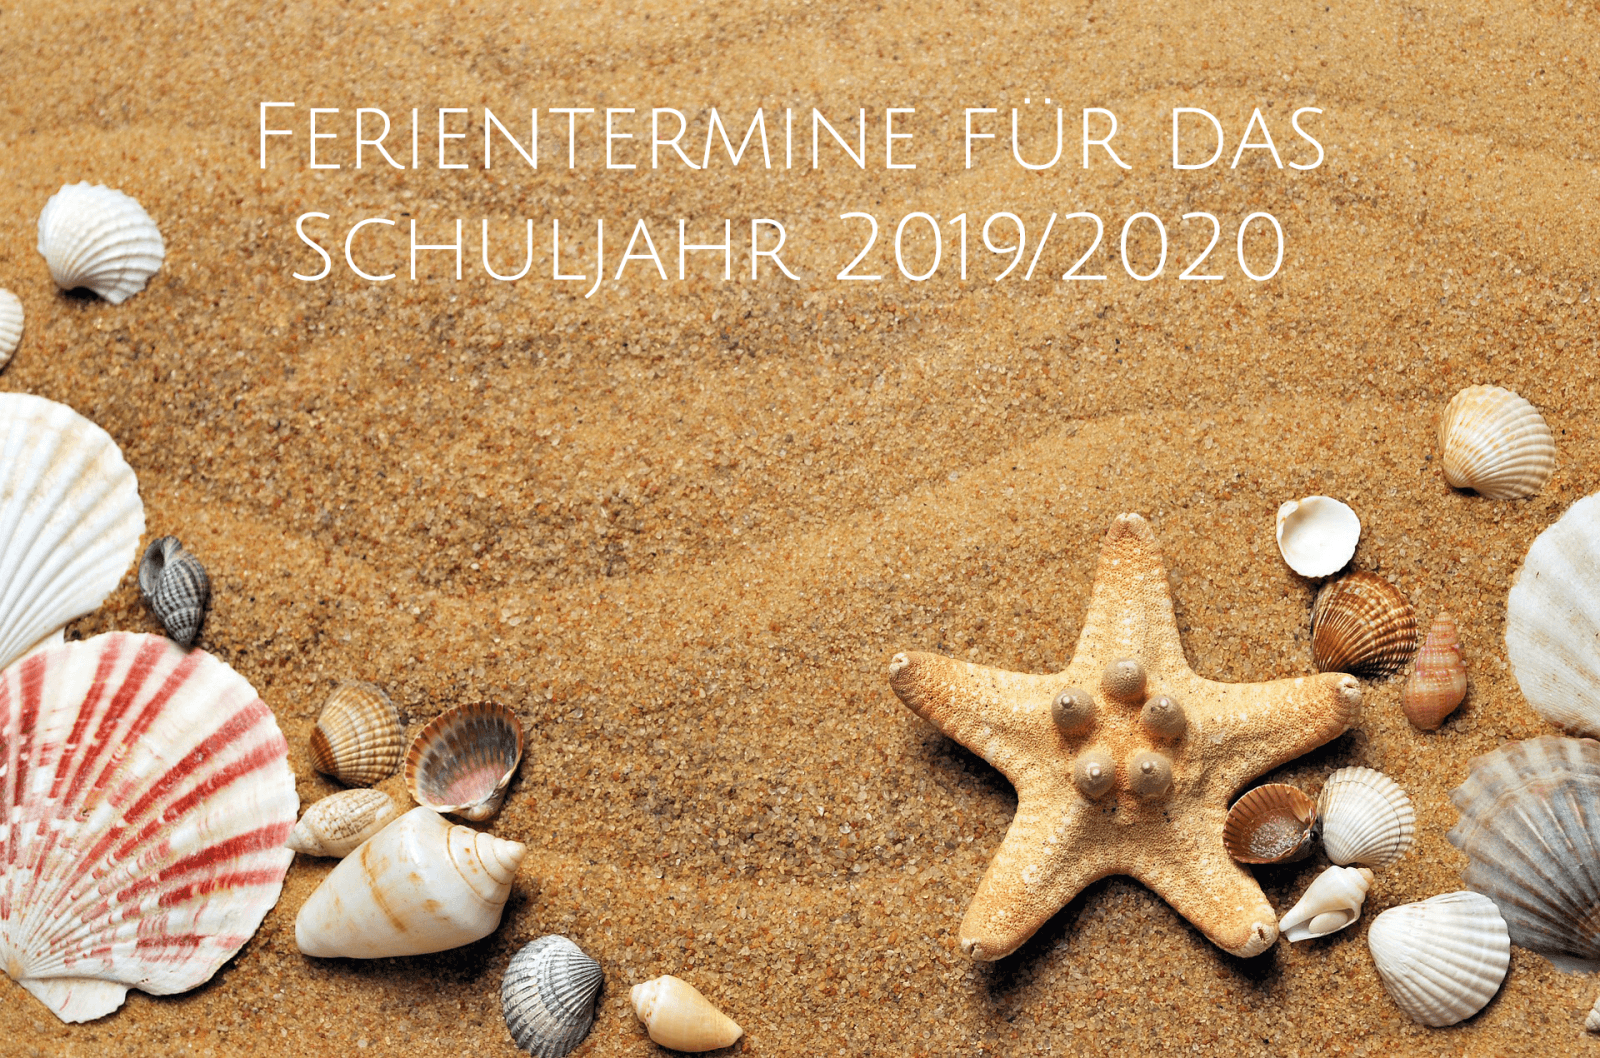 ferienbetreuungstermine-fuer-das-schuljahr-2019-20